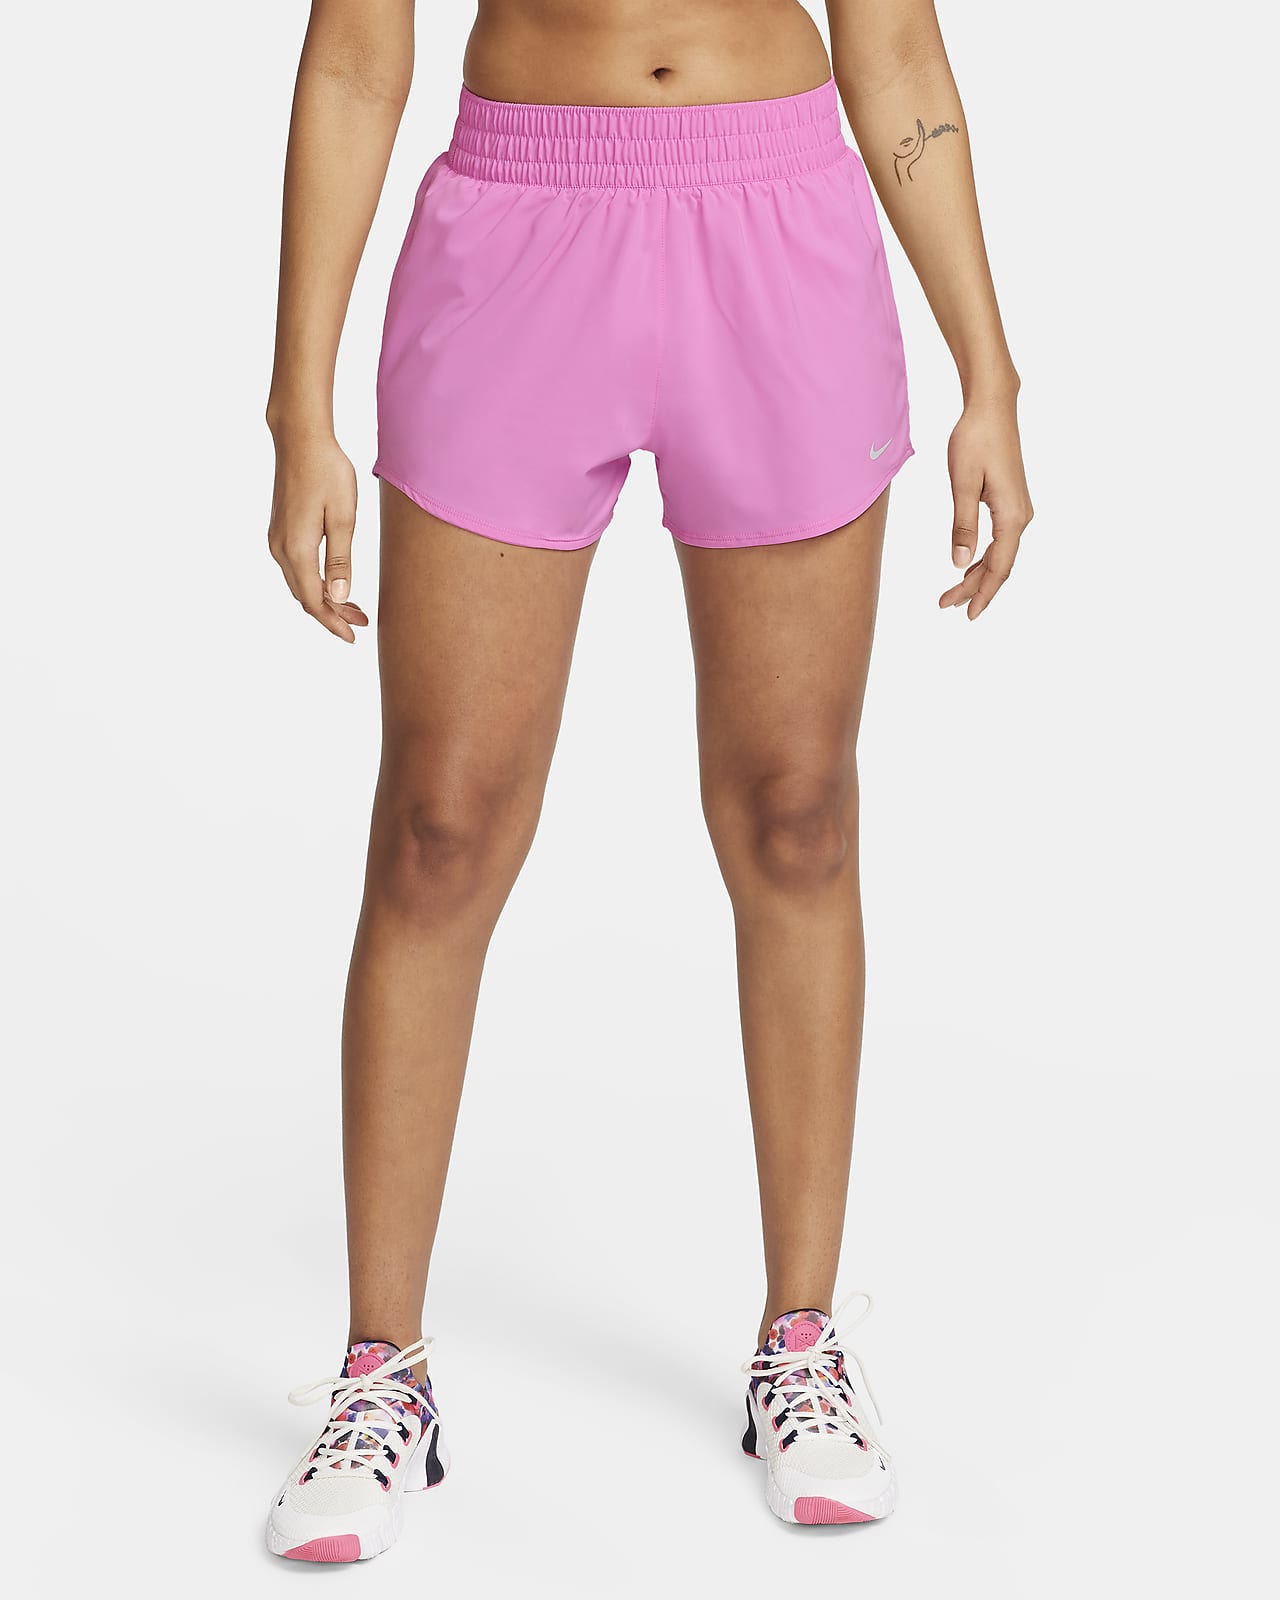 Shorts con forro de ropa interior Dri-FIT de tiro alto de 8 cm para mujer Nike One